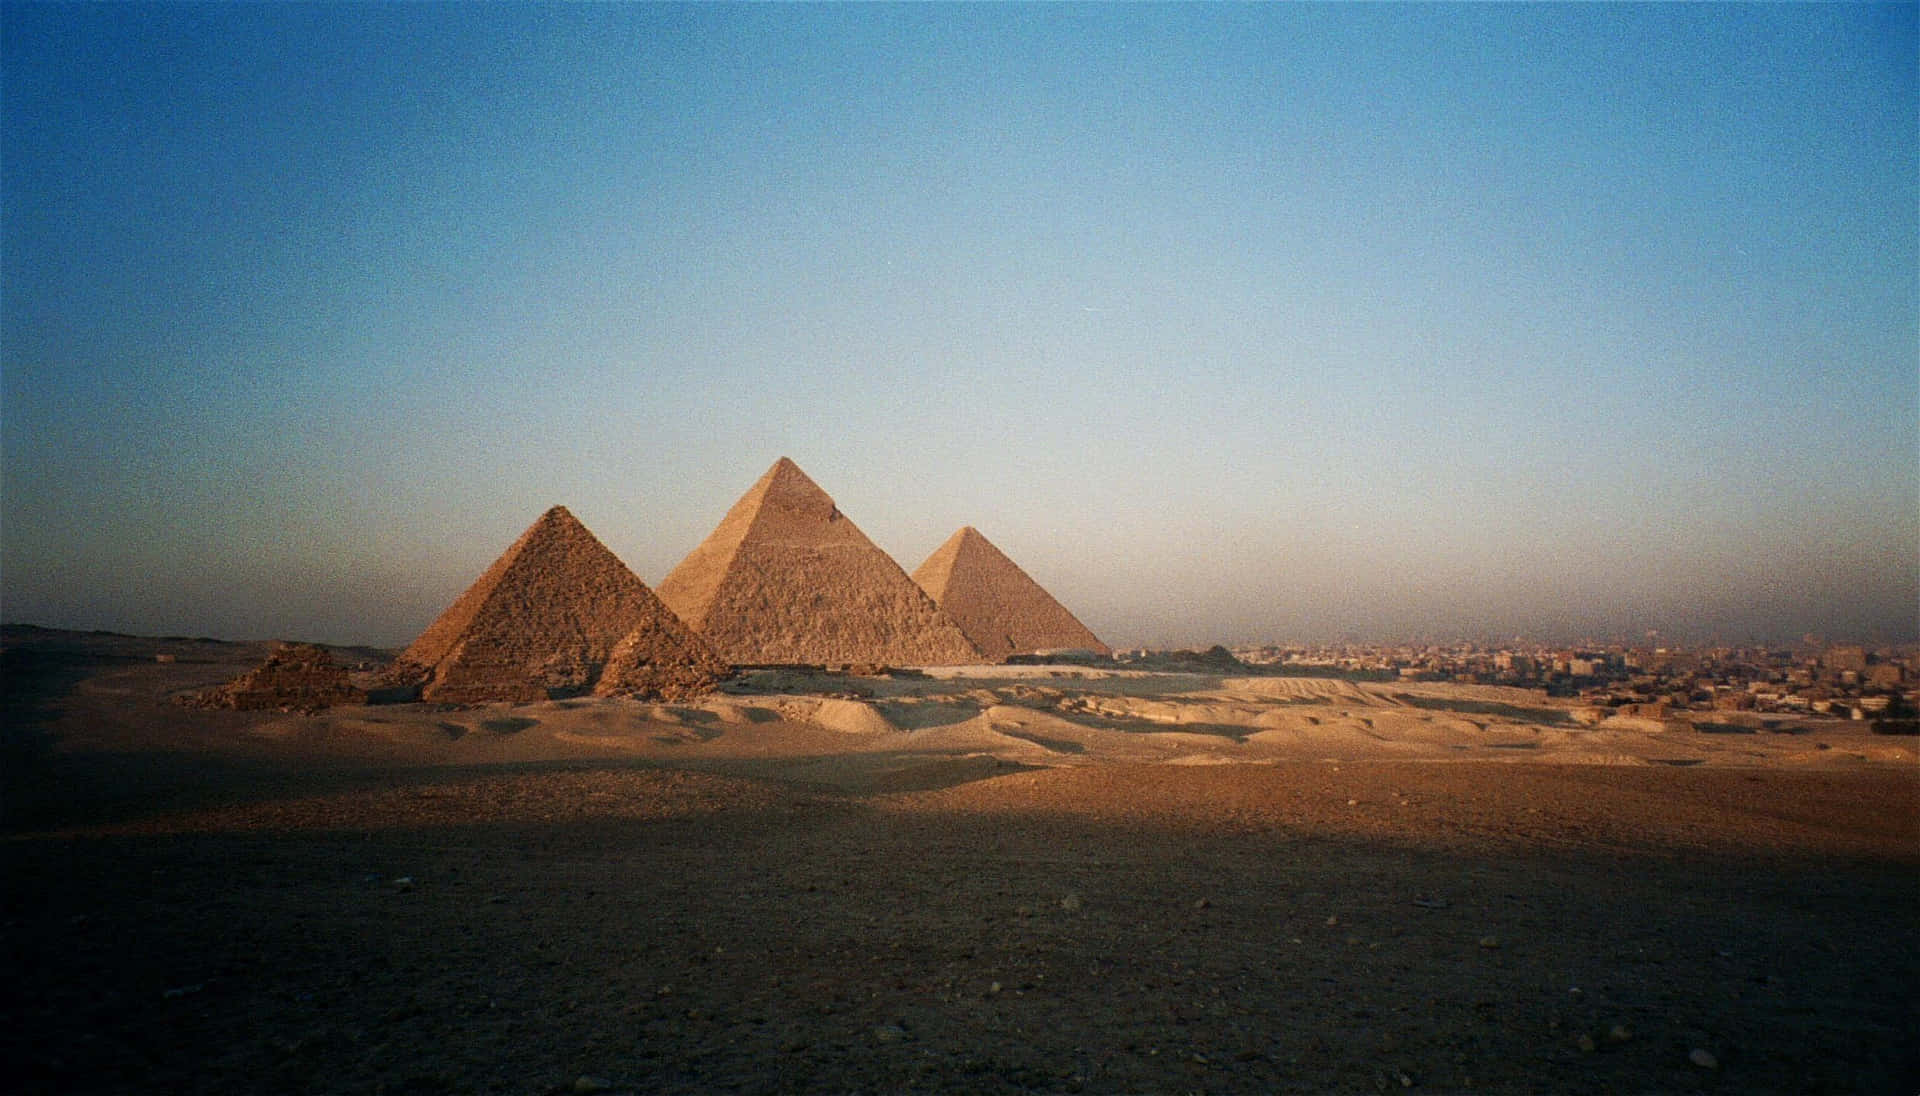 Pirâmidesde Gizé Ao Pôr Do Sol